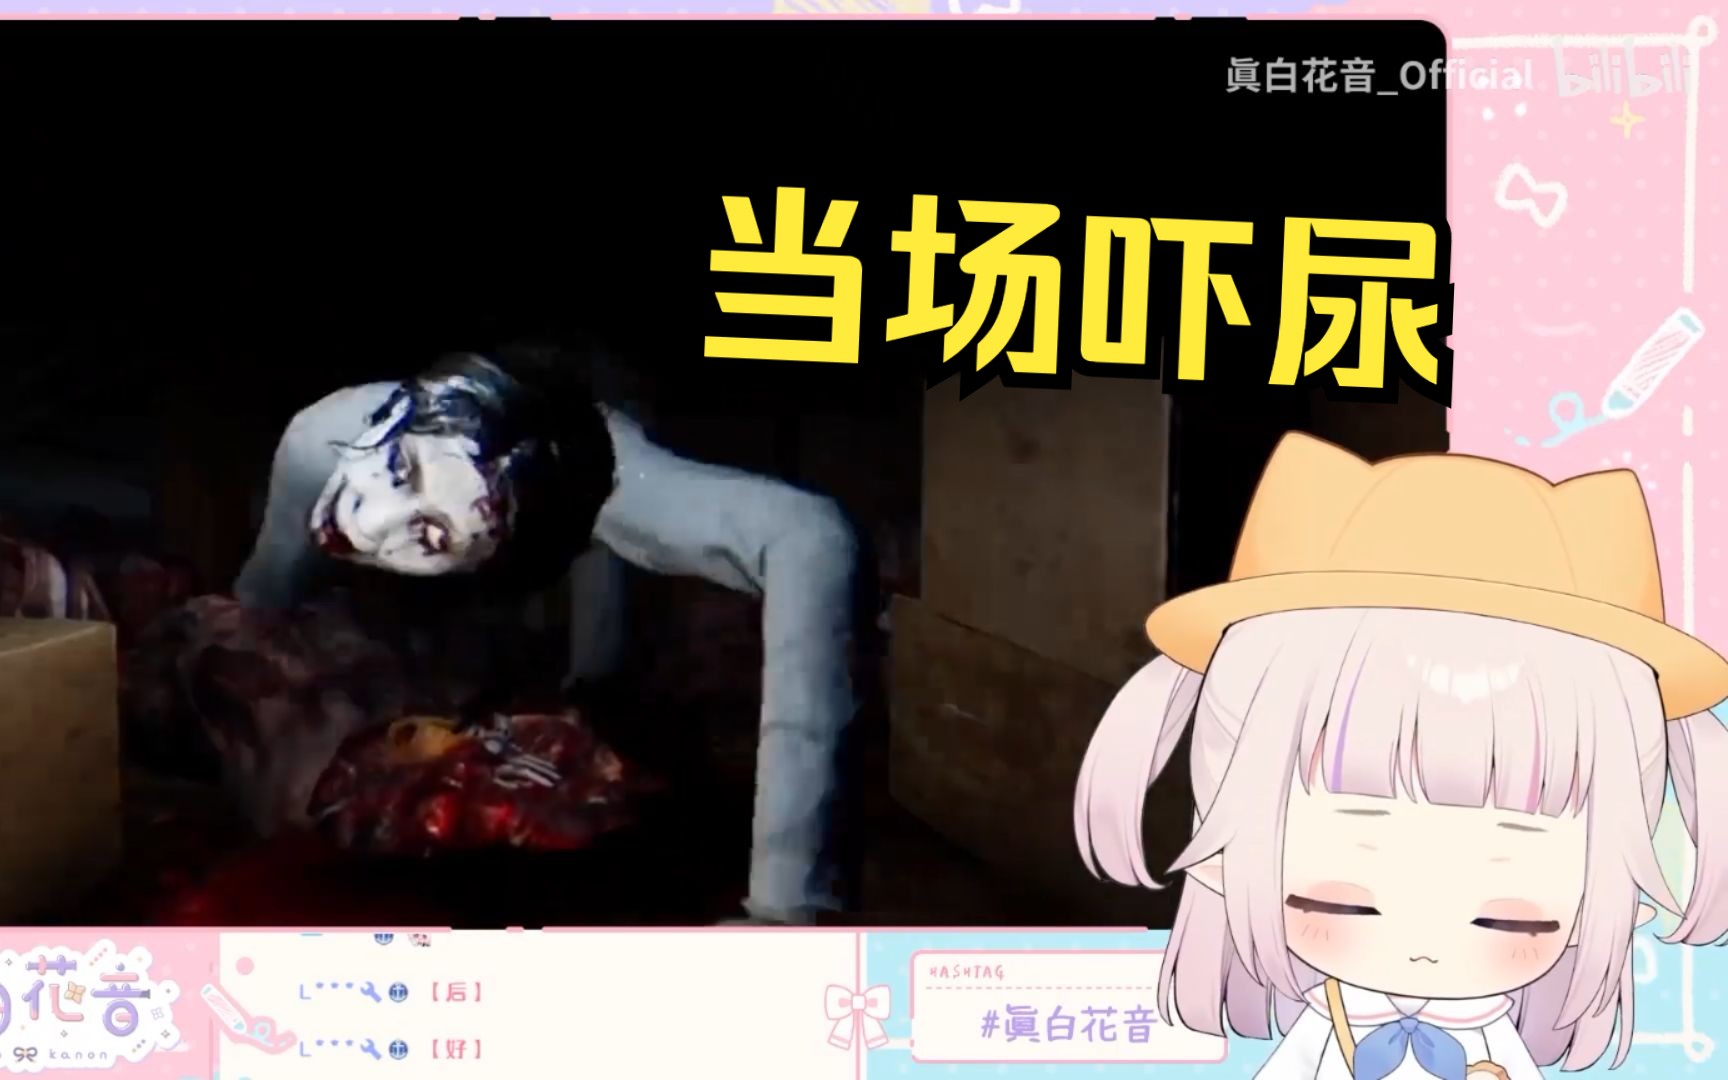 日本萝莉玩恐怖游戏 被突脸当场吓尿 疯狂尖叫